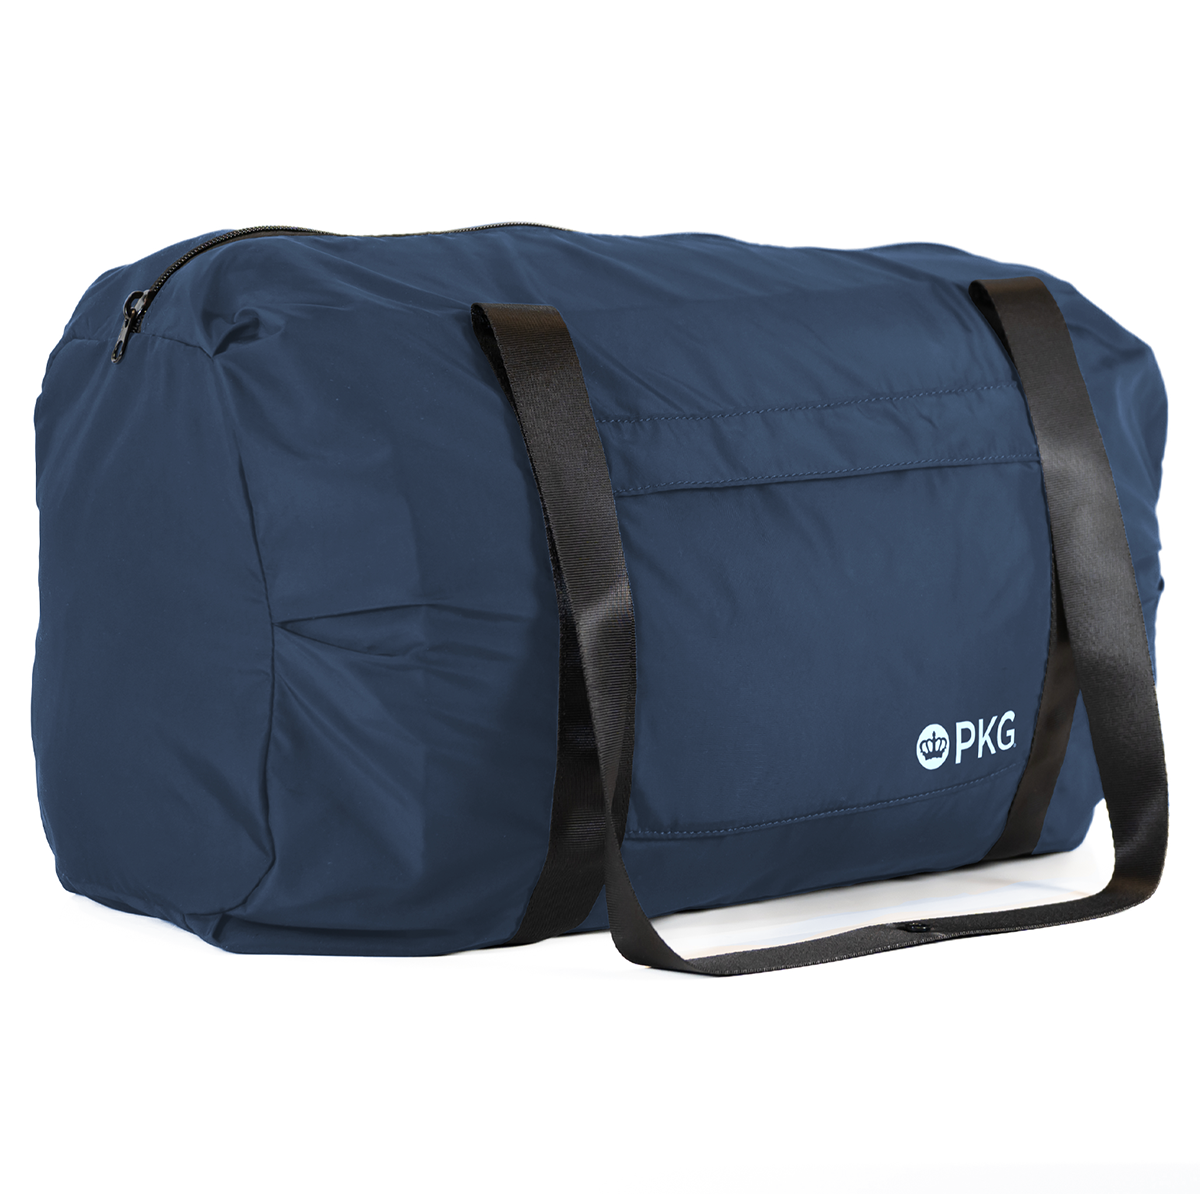 PKG Umiak Recycled Packable Duffel Bag